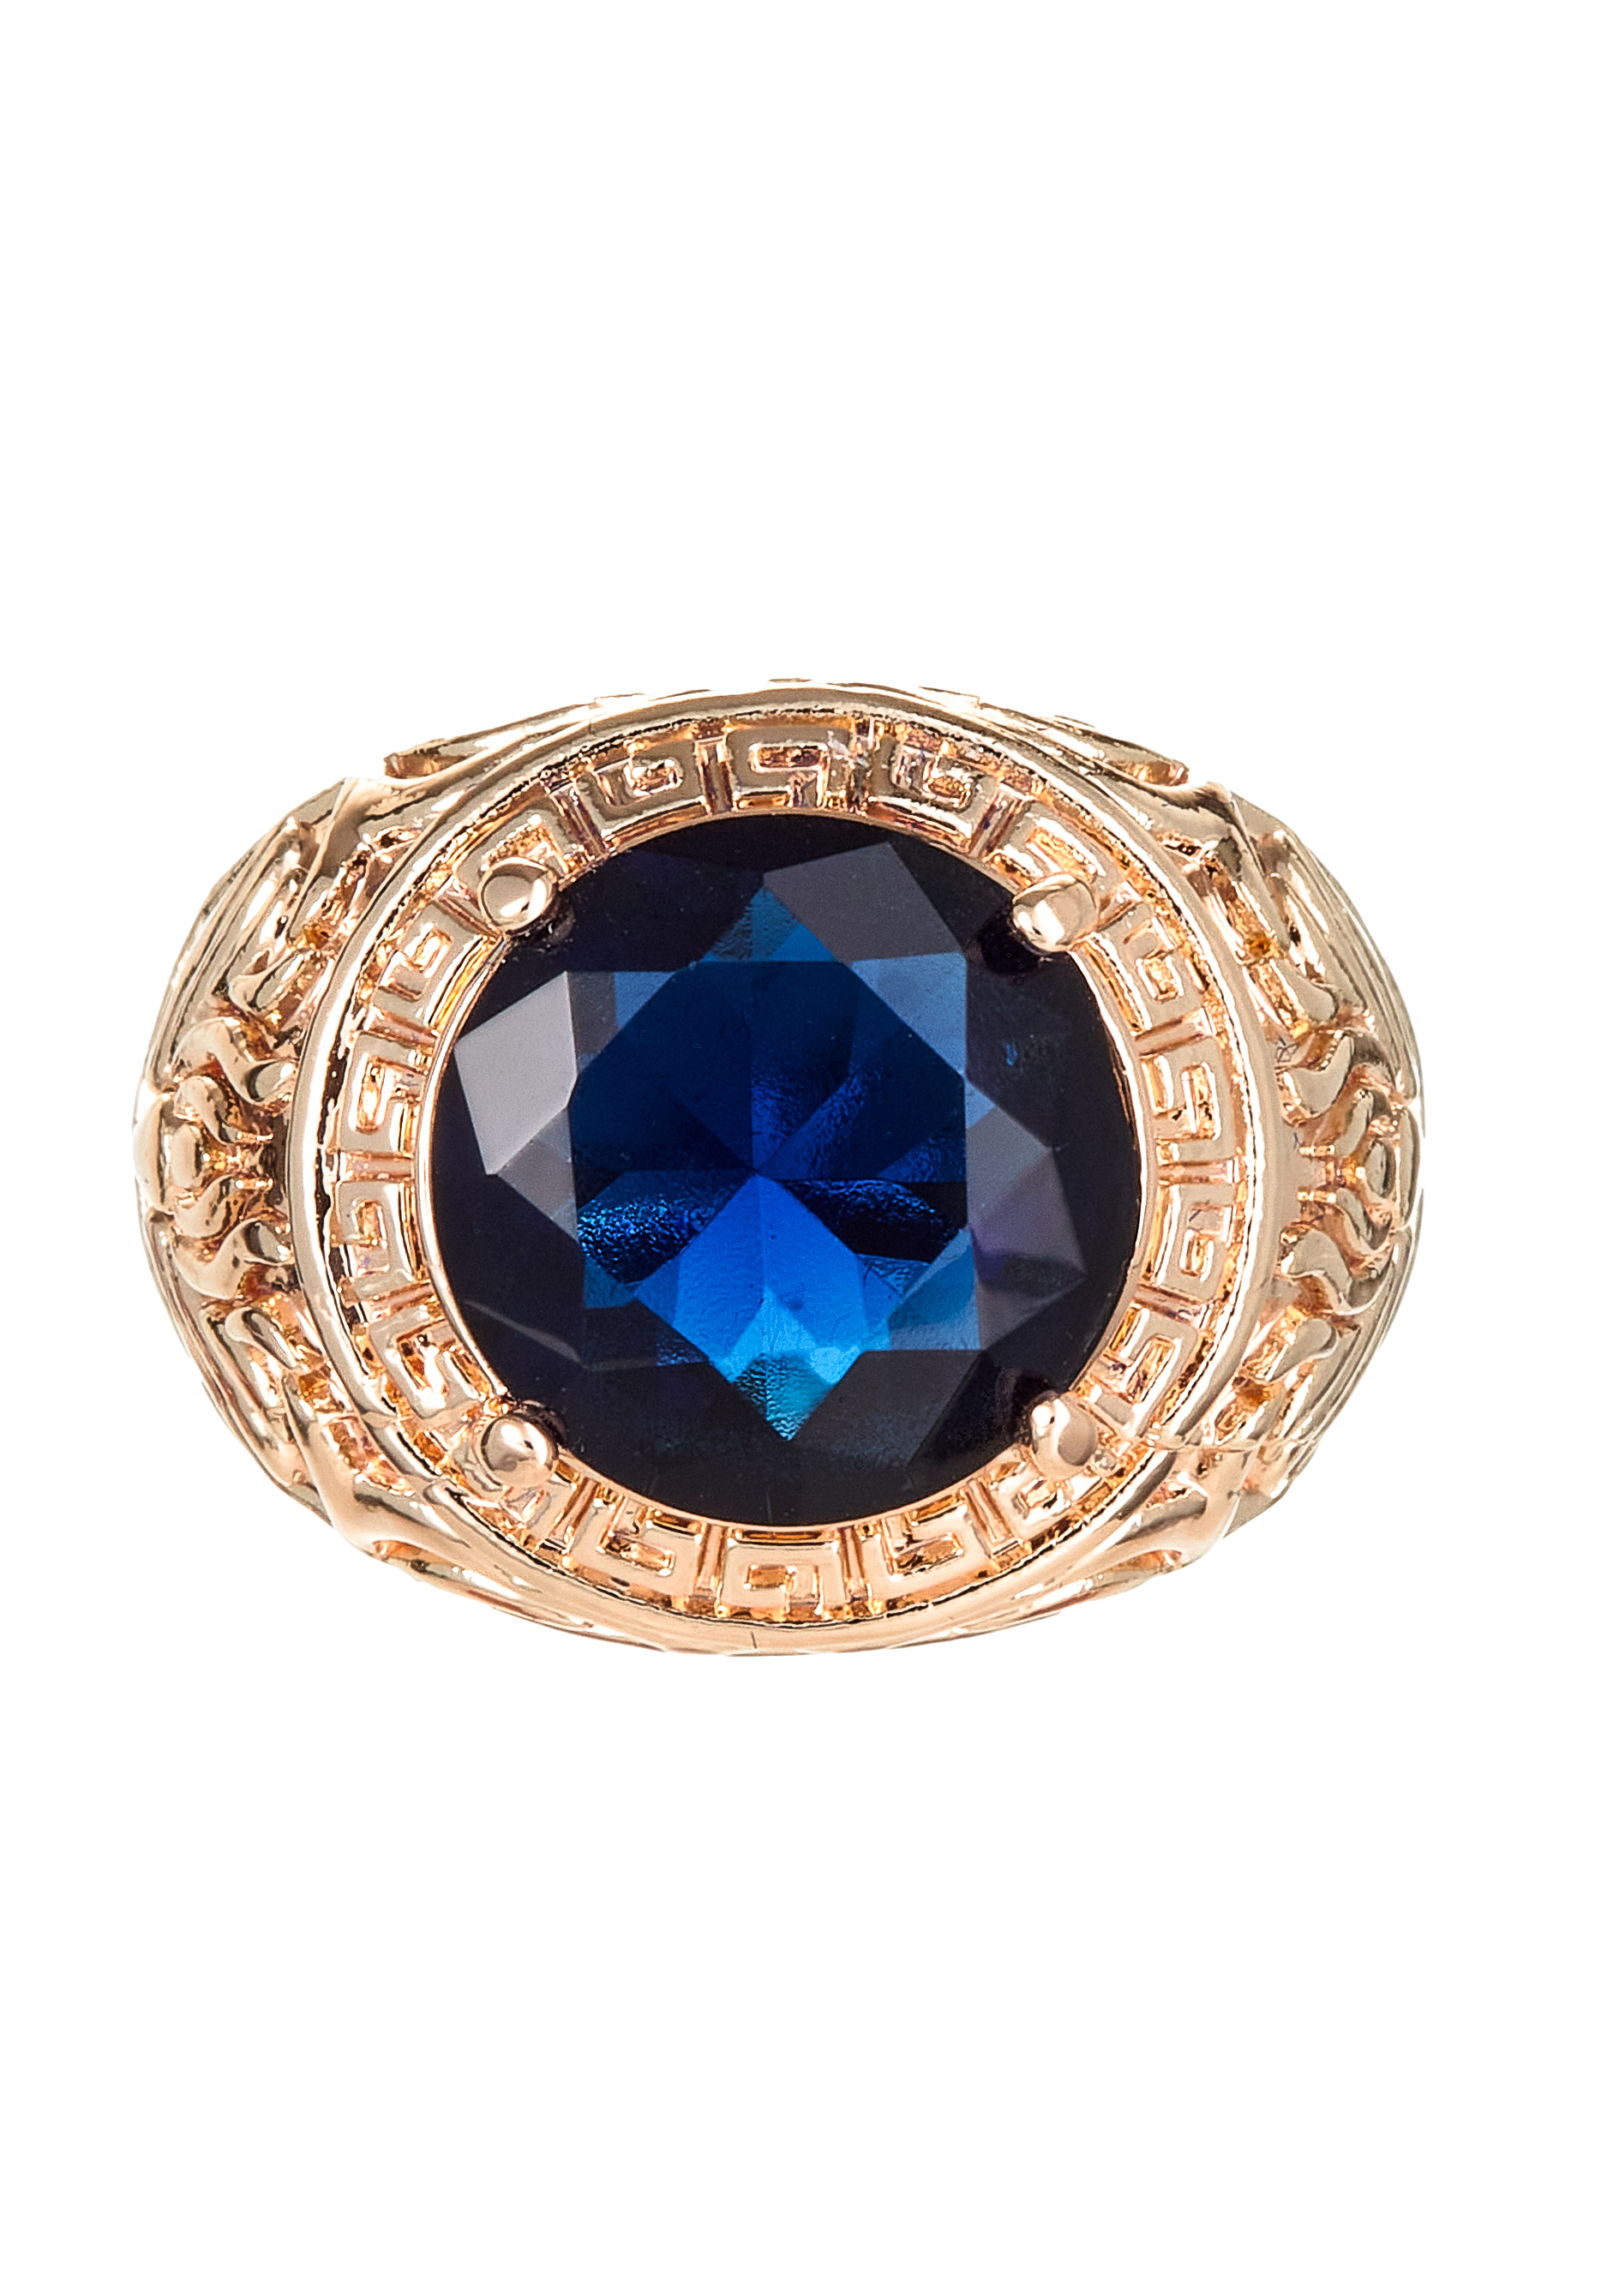 Комплект "Очаровательный вечер" Apsara, цвет синий, размер 19 перстень - фото 3